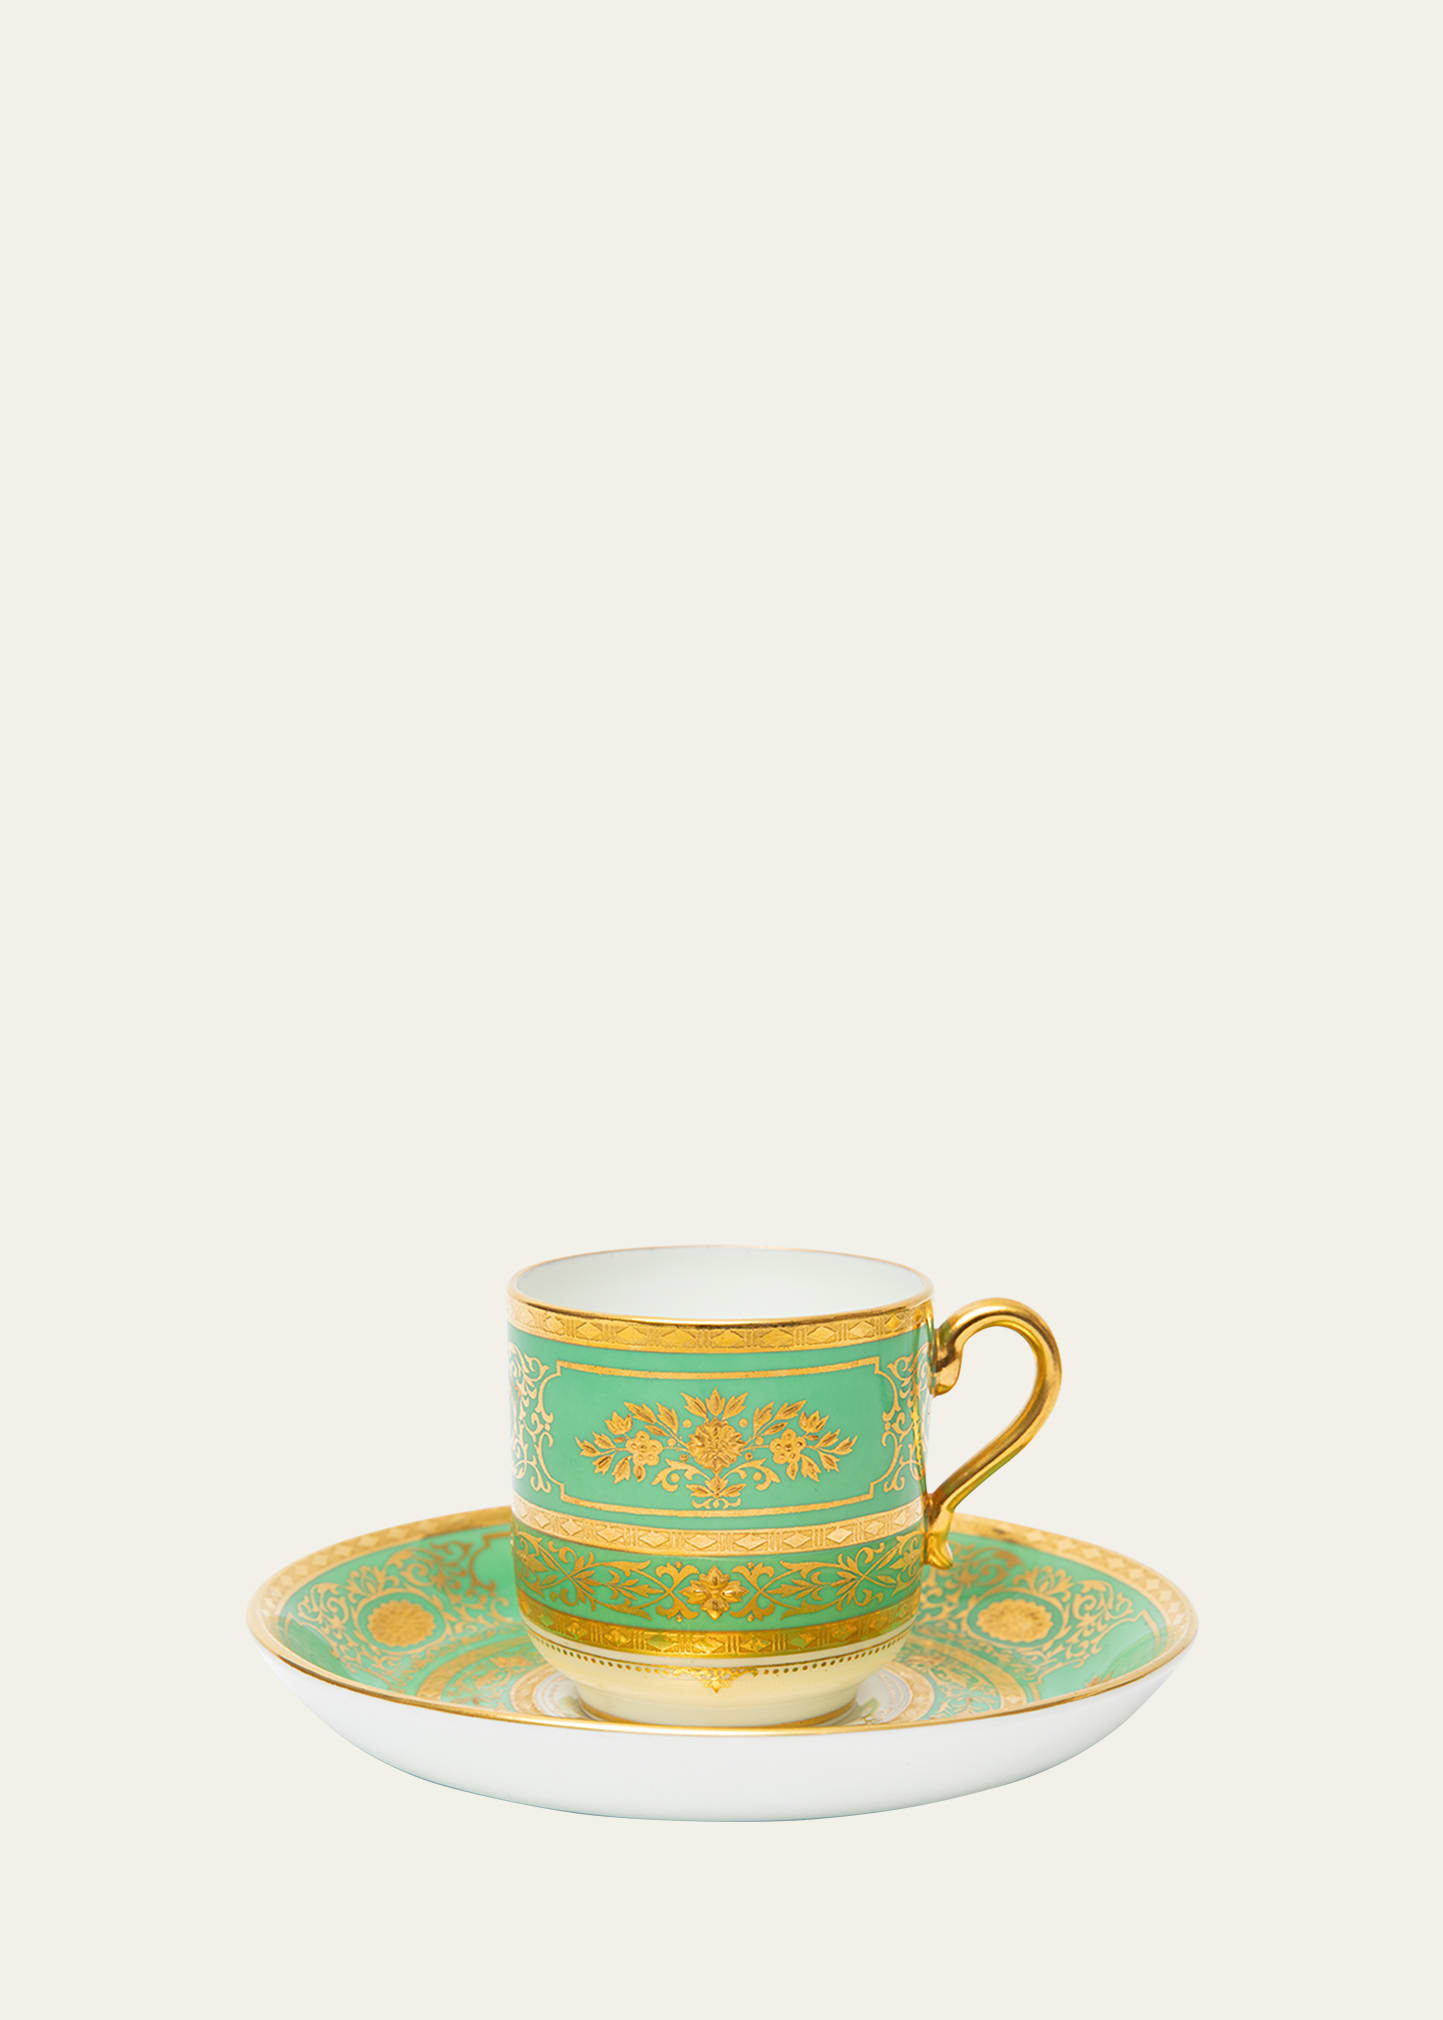 Antique Minton Teacups & Saucers, Set of 8